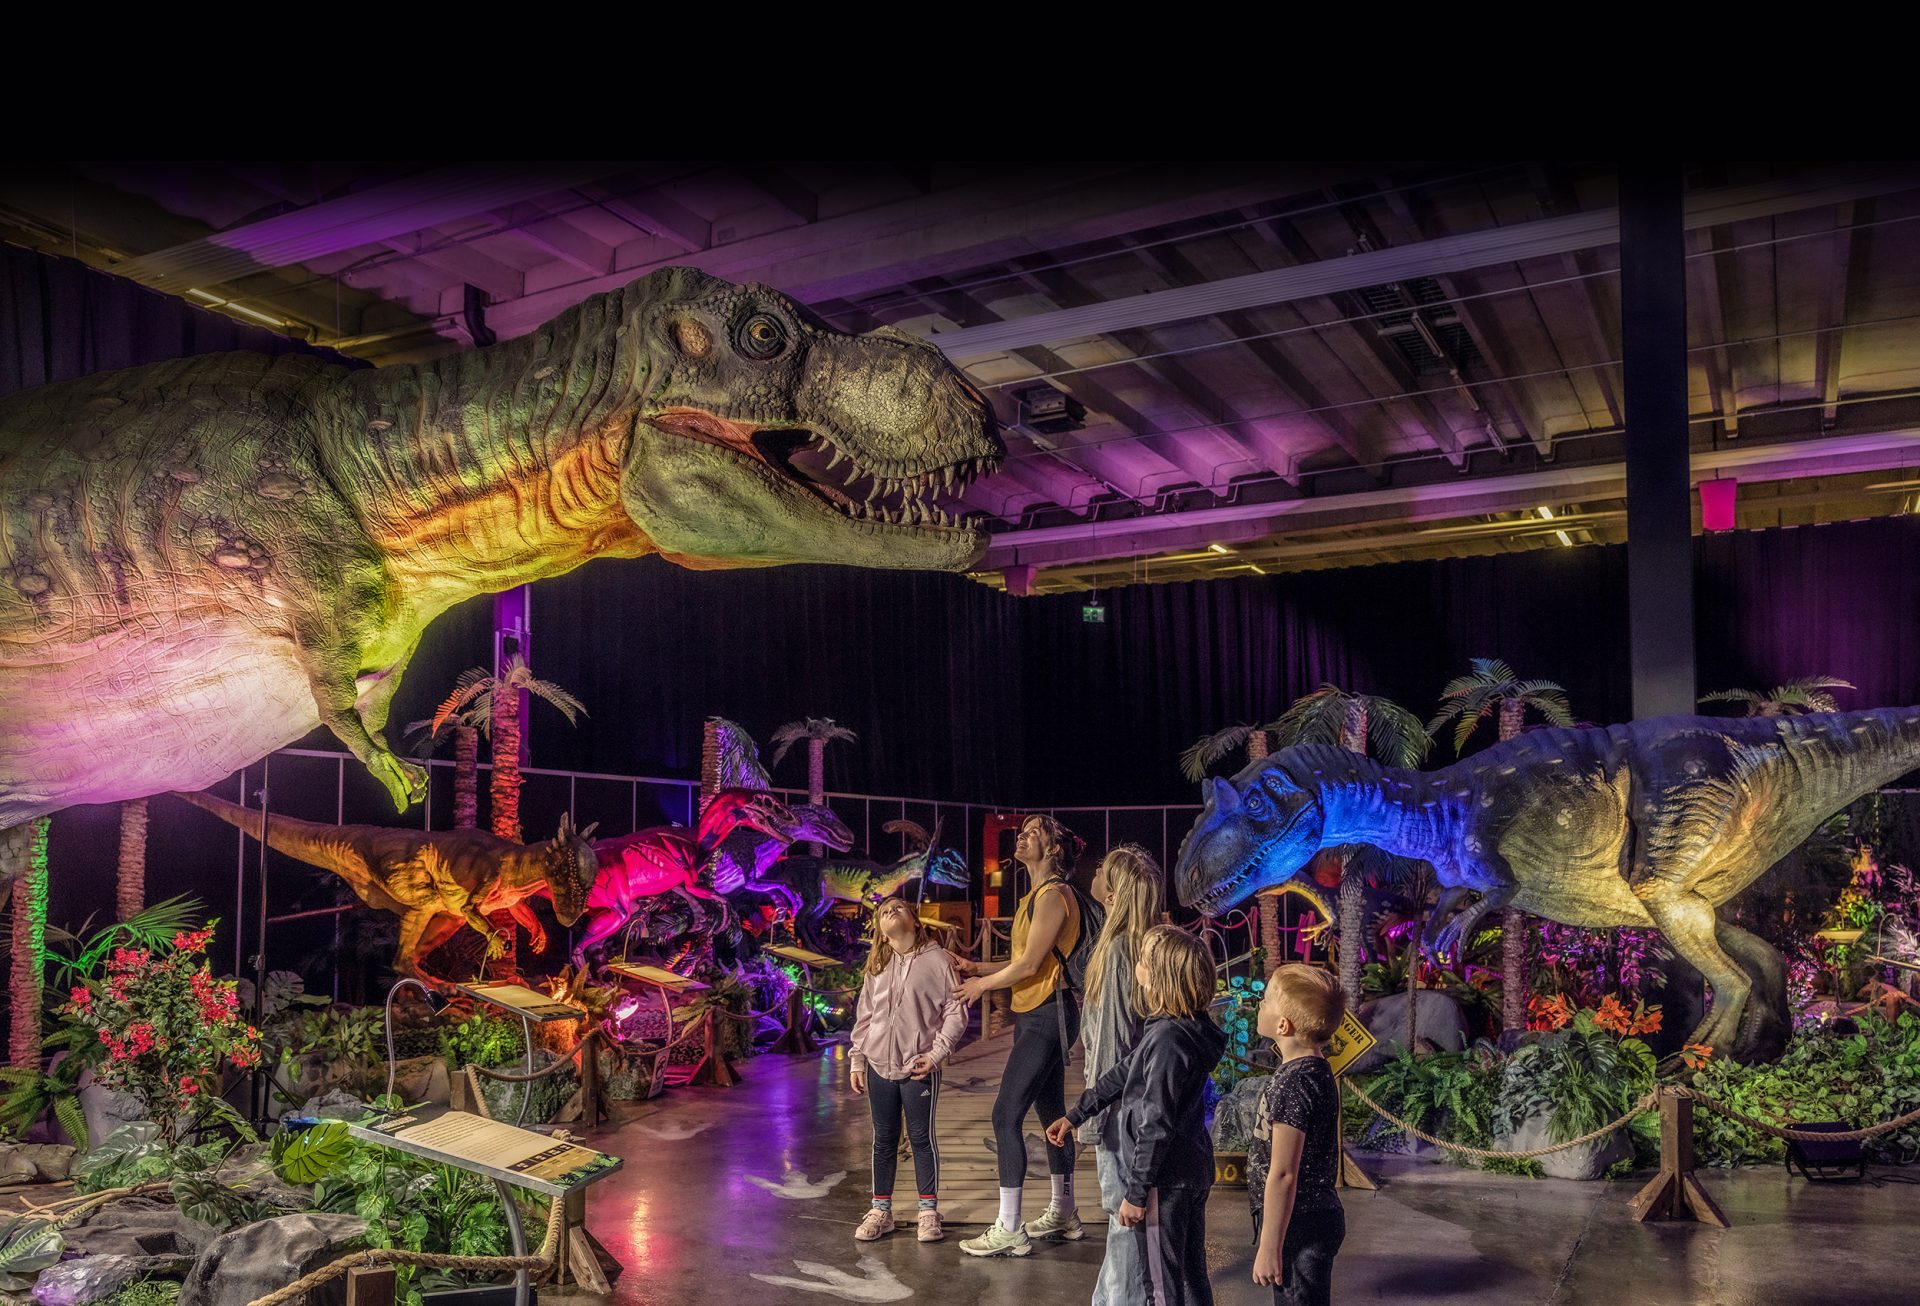 Näyttelyvieraat ihastelevat luonnollisen kokoista Tyrannosaurus Rex -dinosaurusta.